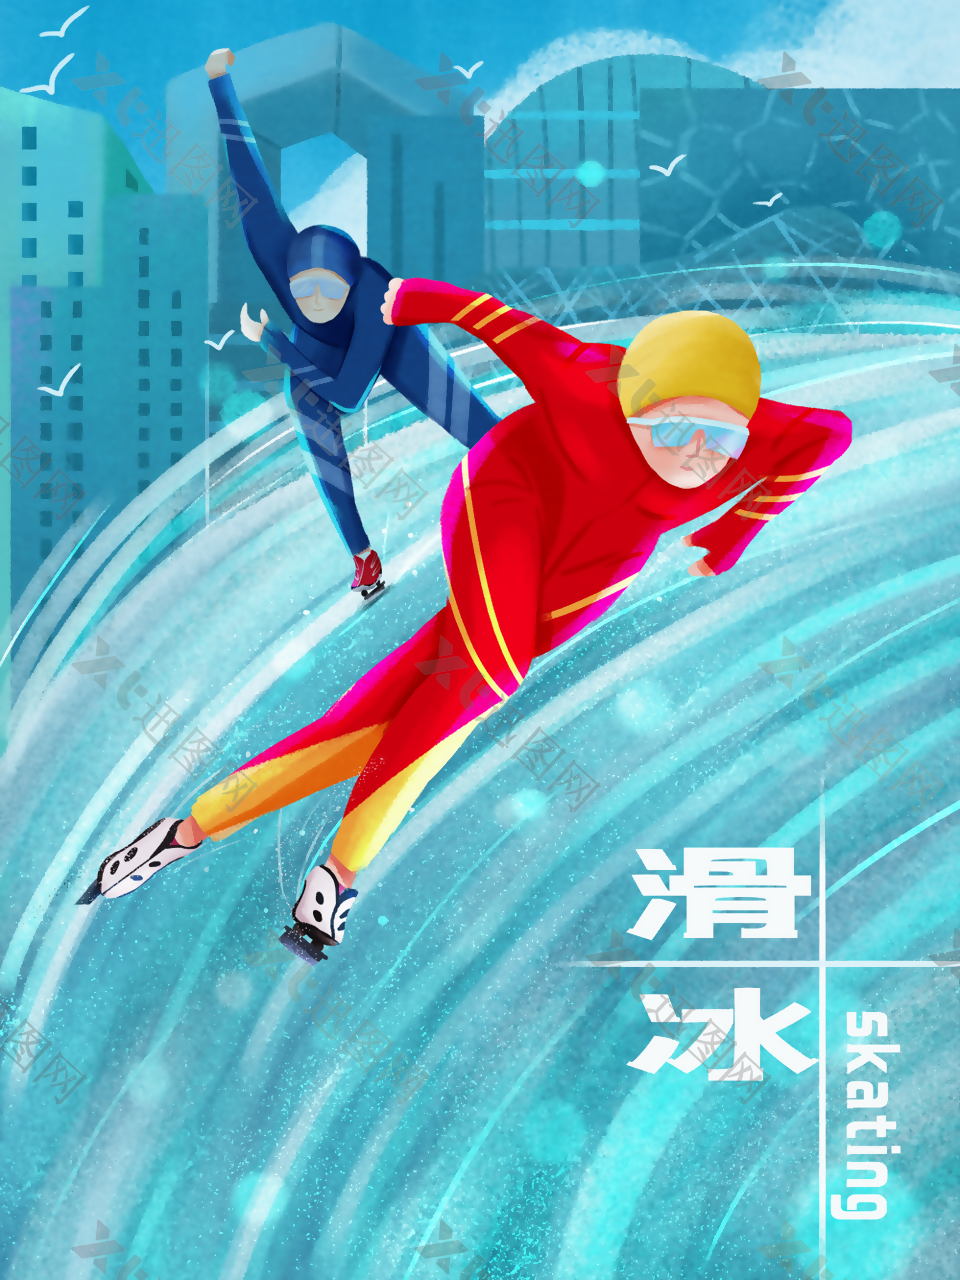 冬季滑冰运动海报设计